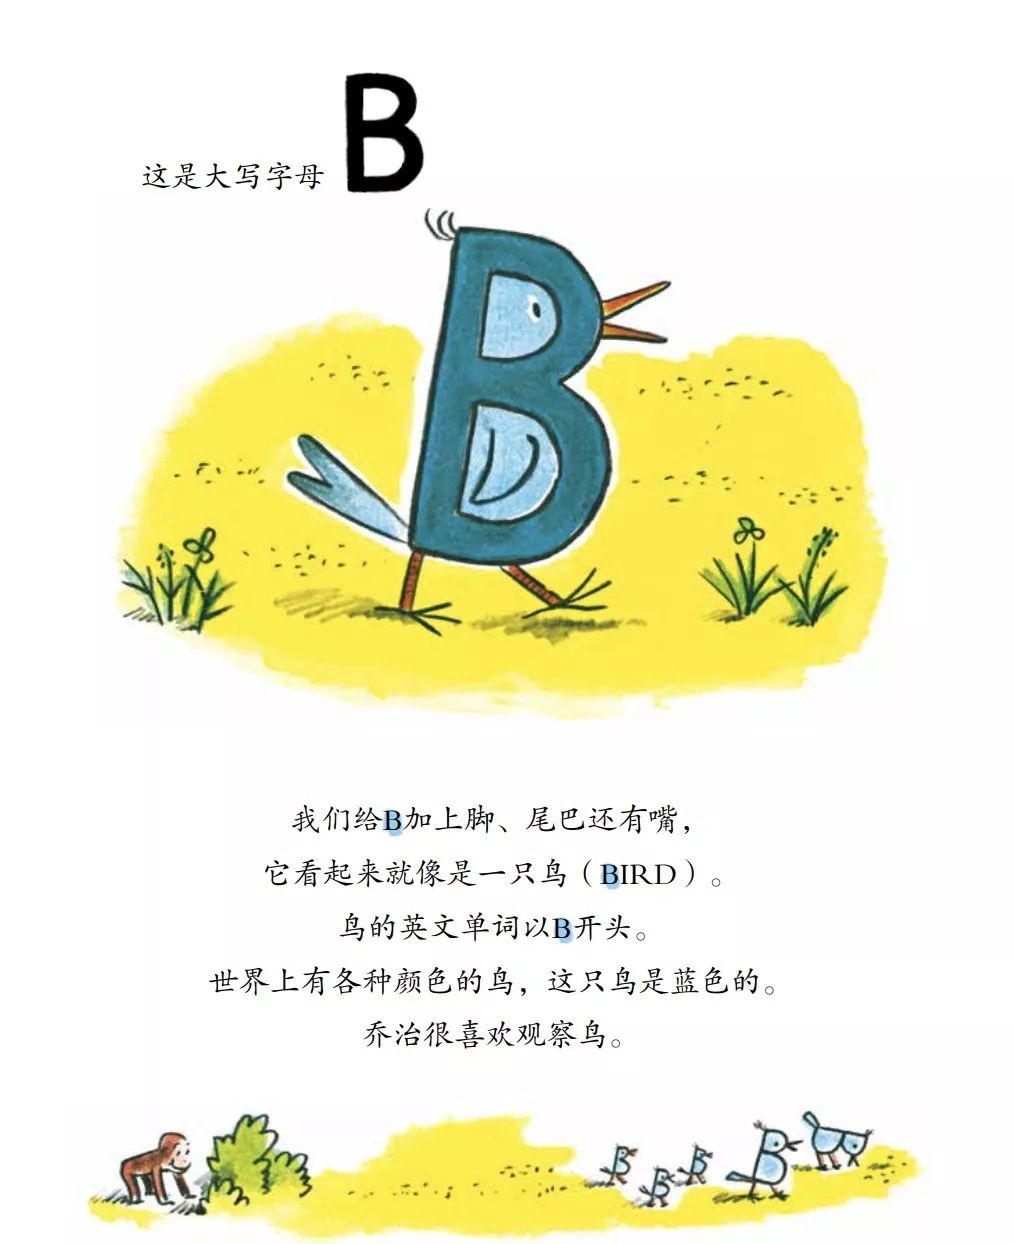 大写字母b看起来就像是一只鸟(bird)——小写字母a看起来像一小片苹果